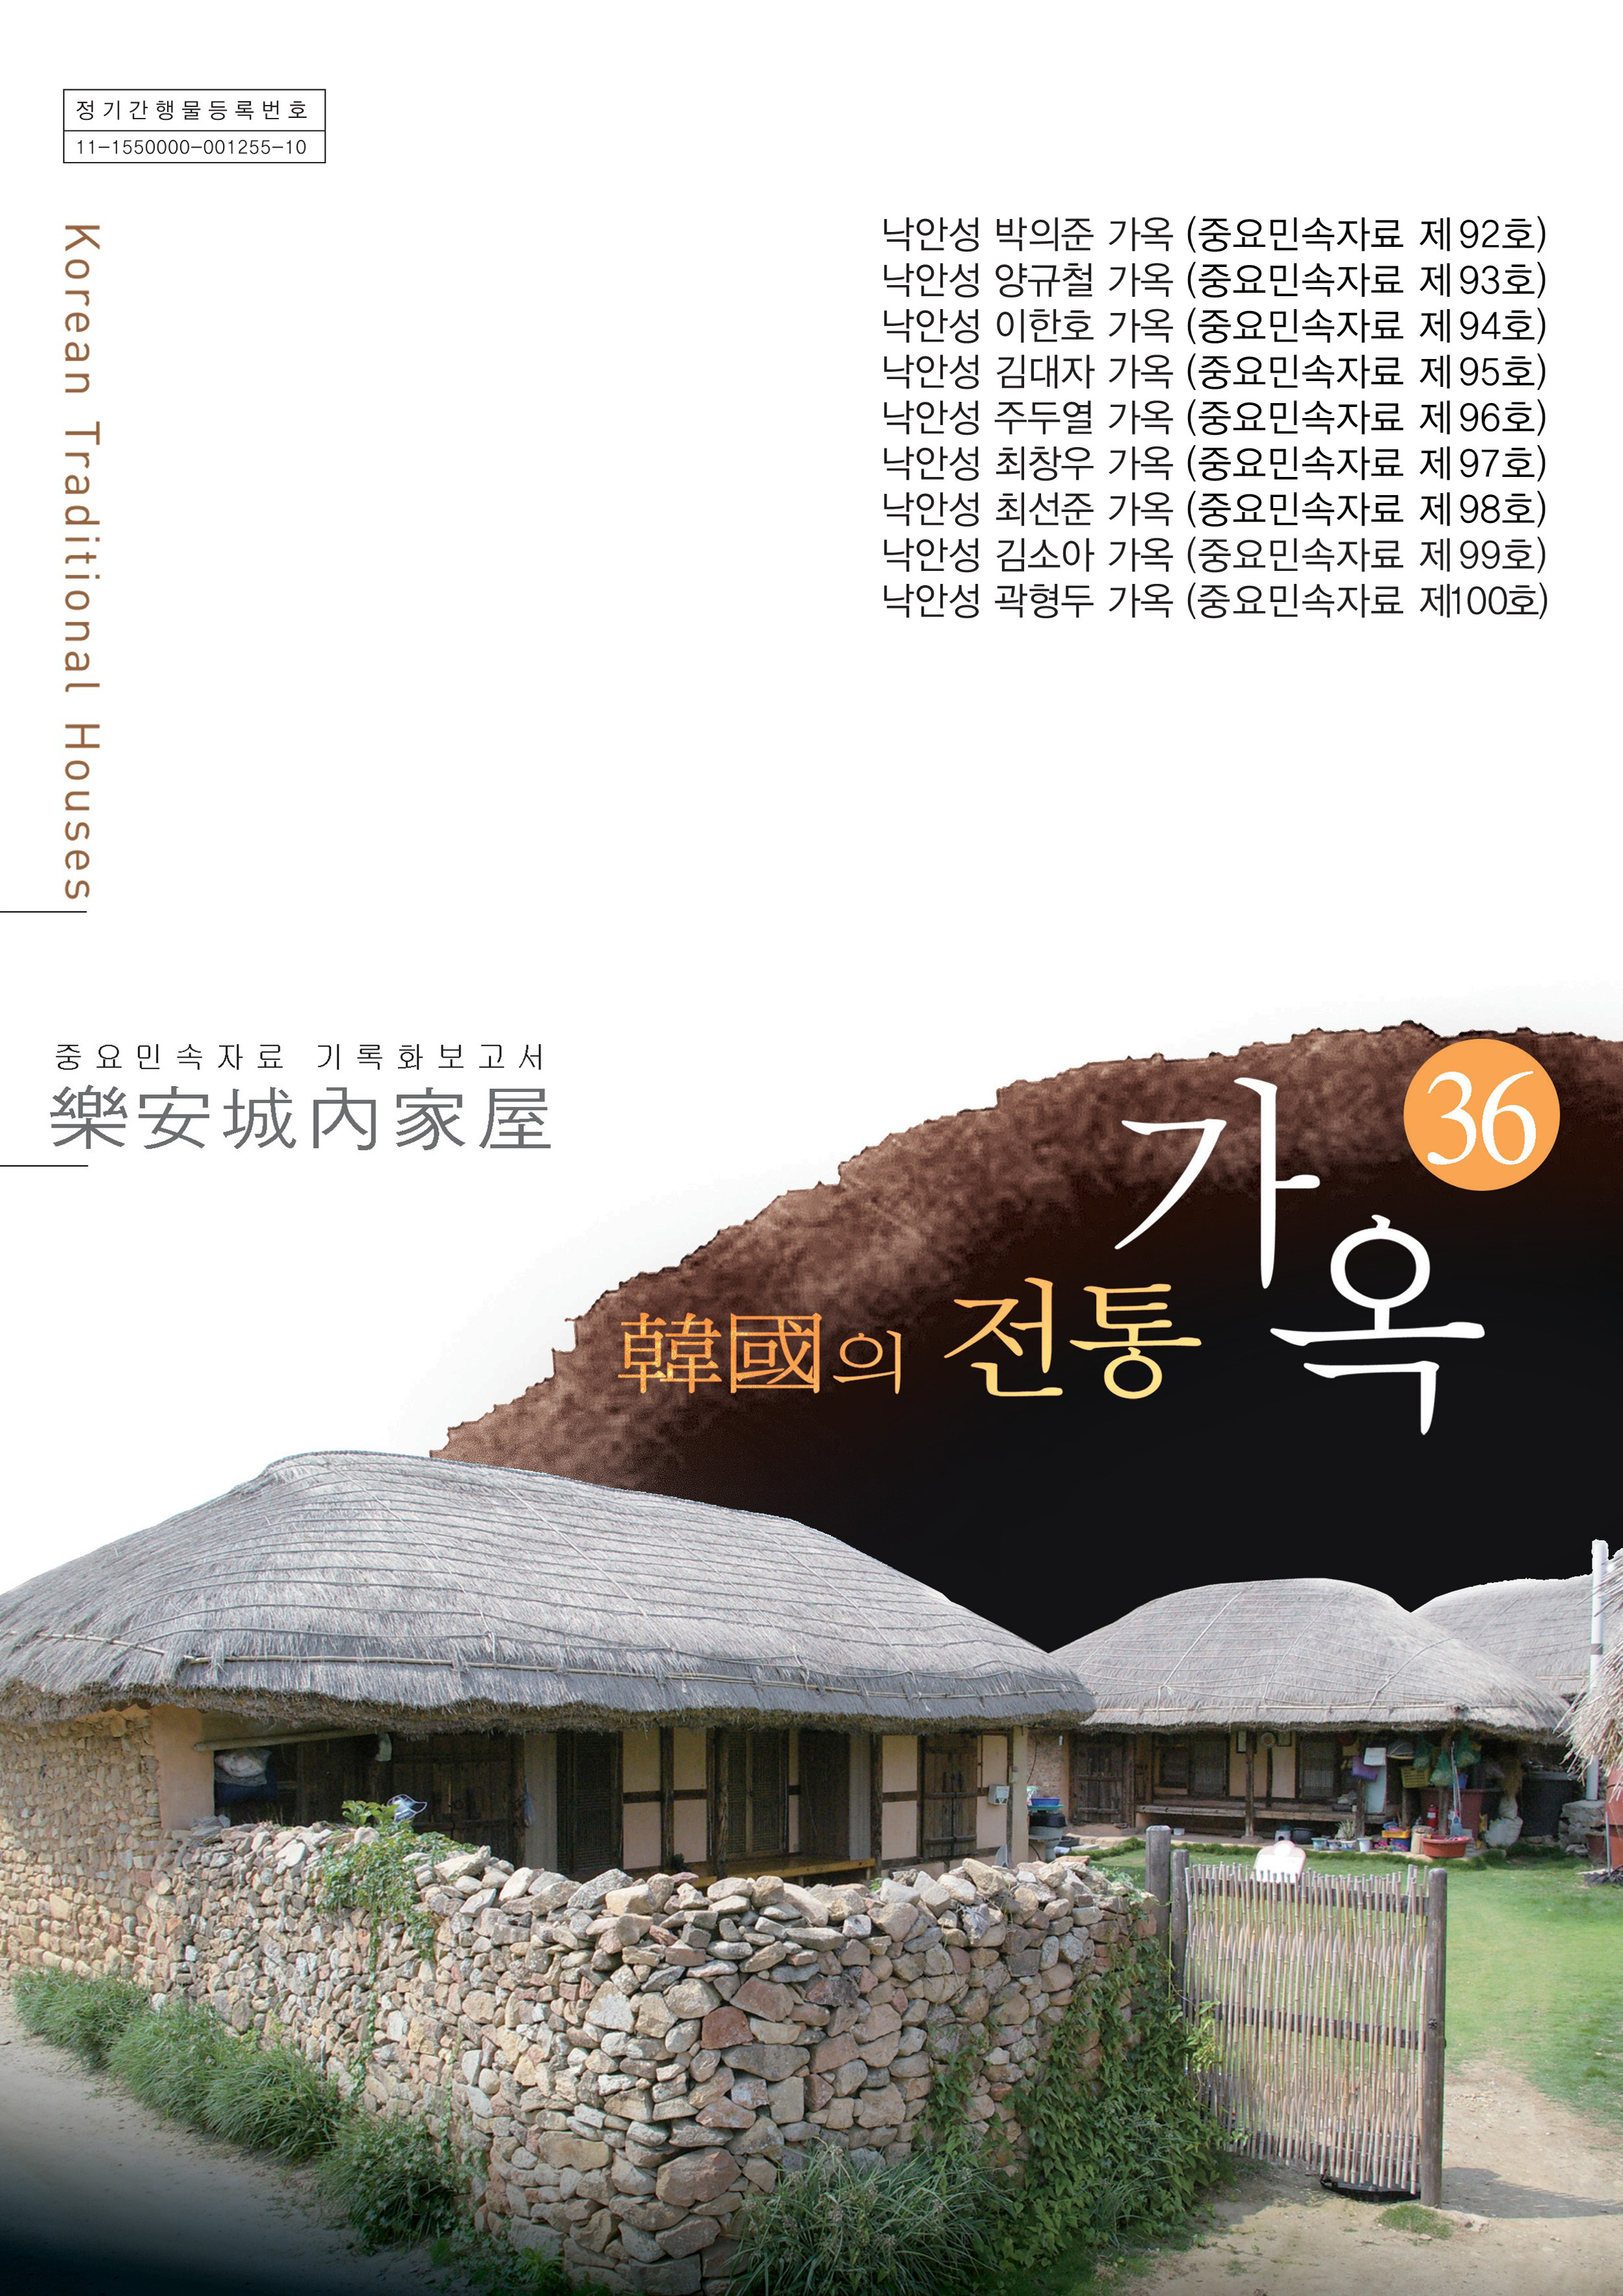 중요민속자료 기록회보고서 낙안성내가옥 한국의 전통가옥 36